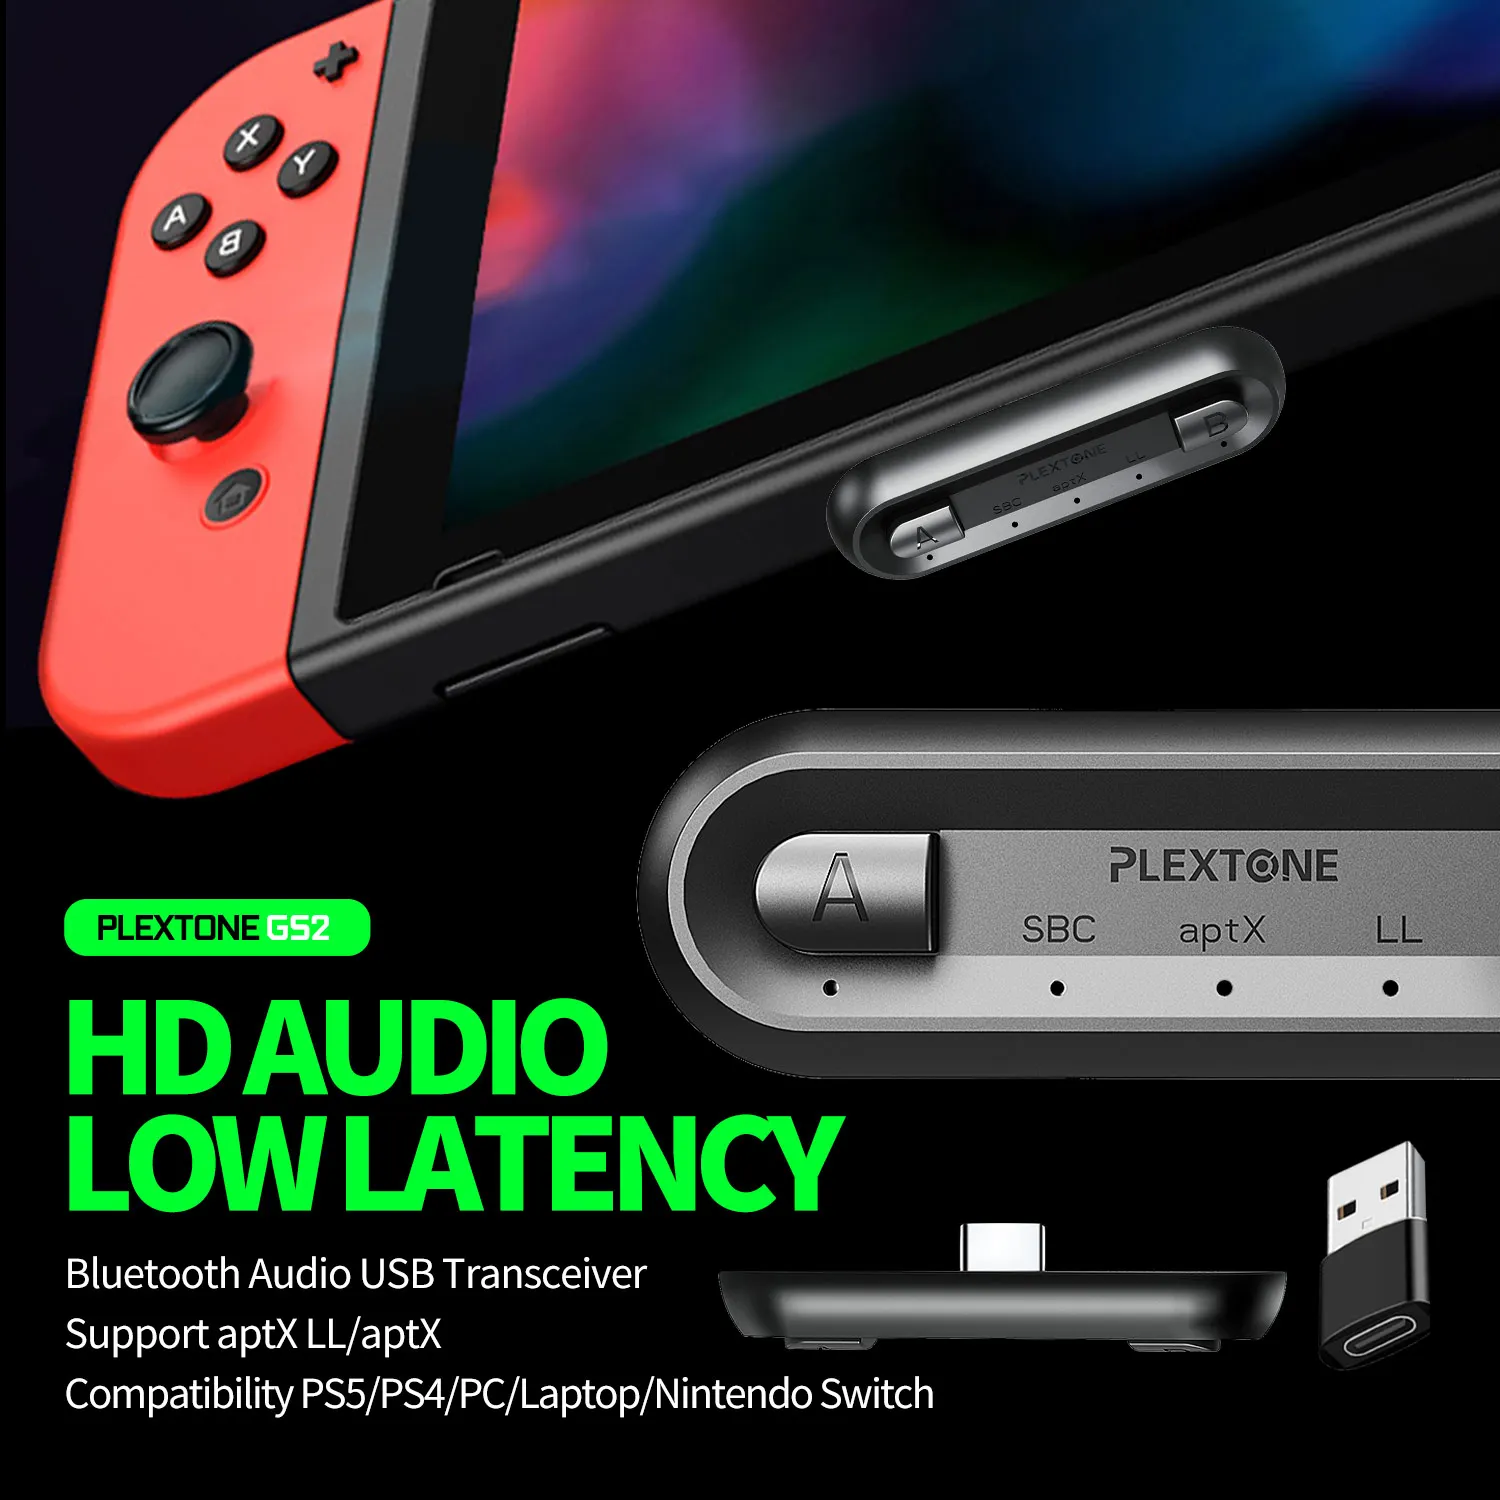 
Plextone Wireless Adapter Wireless Audio Transmitter USB-C/USB to Nintendo Switch PS5 PC Laptops for Airpods APTX 